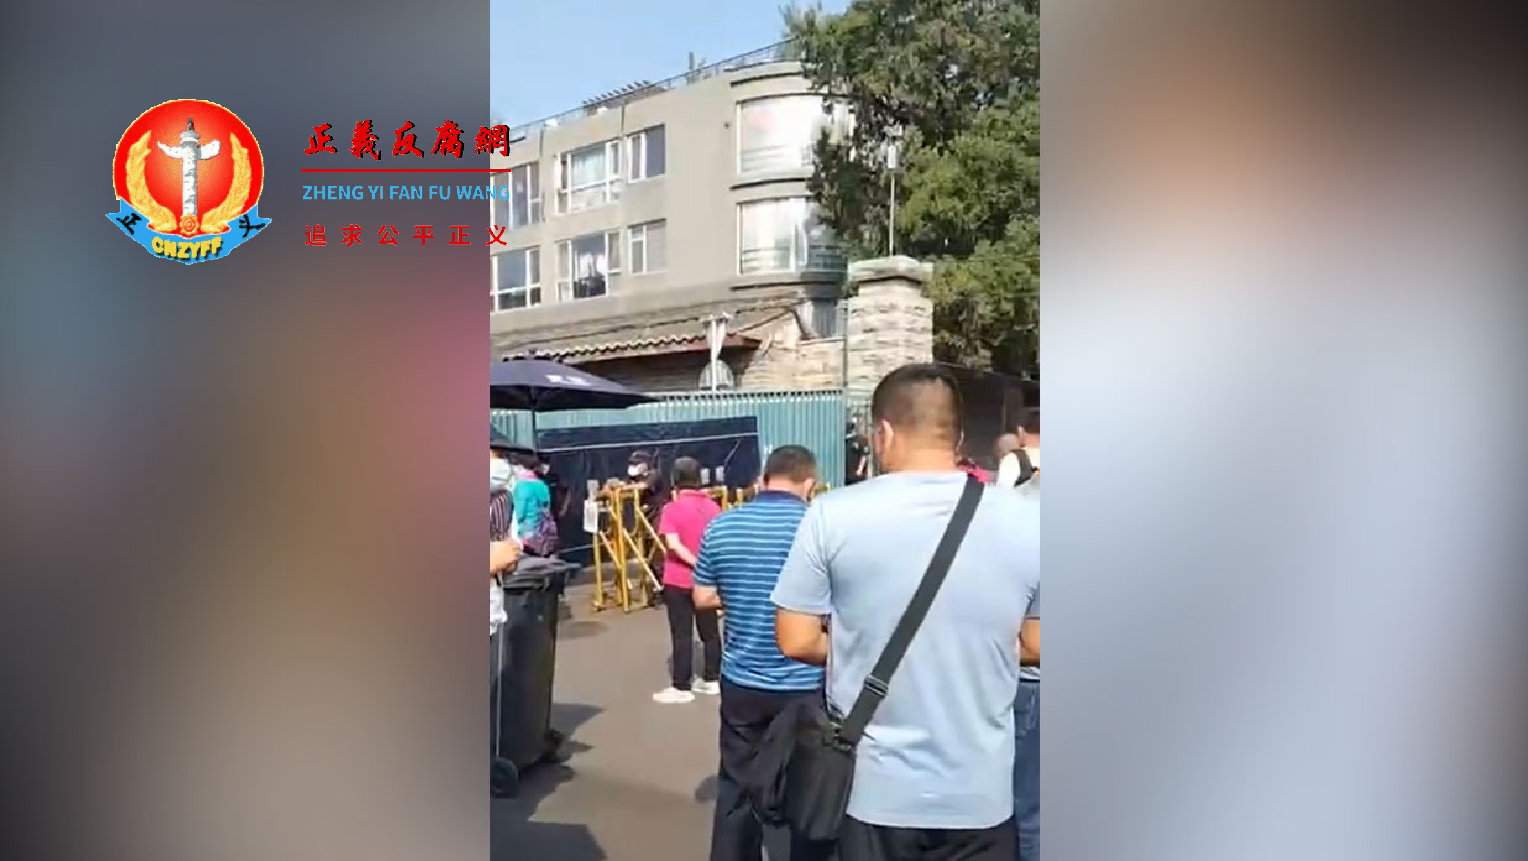 位于北京的国家信访局外，访民排队等候反映各自的诉求。.png